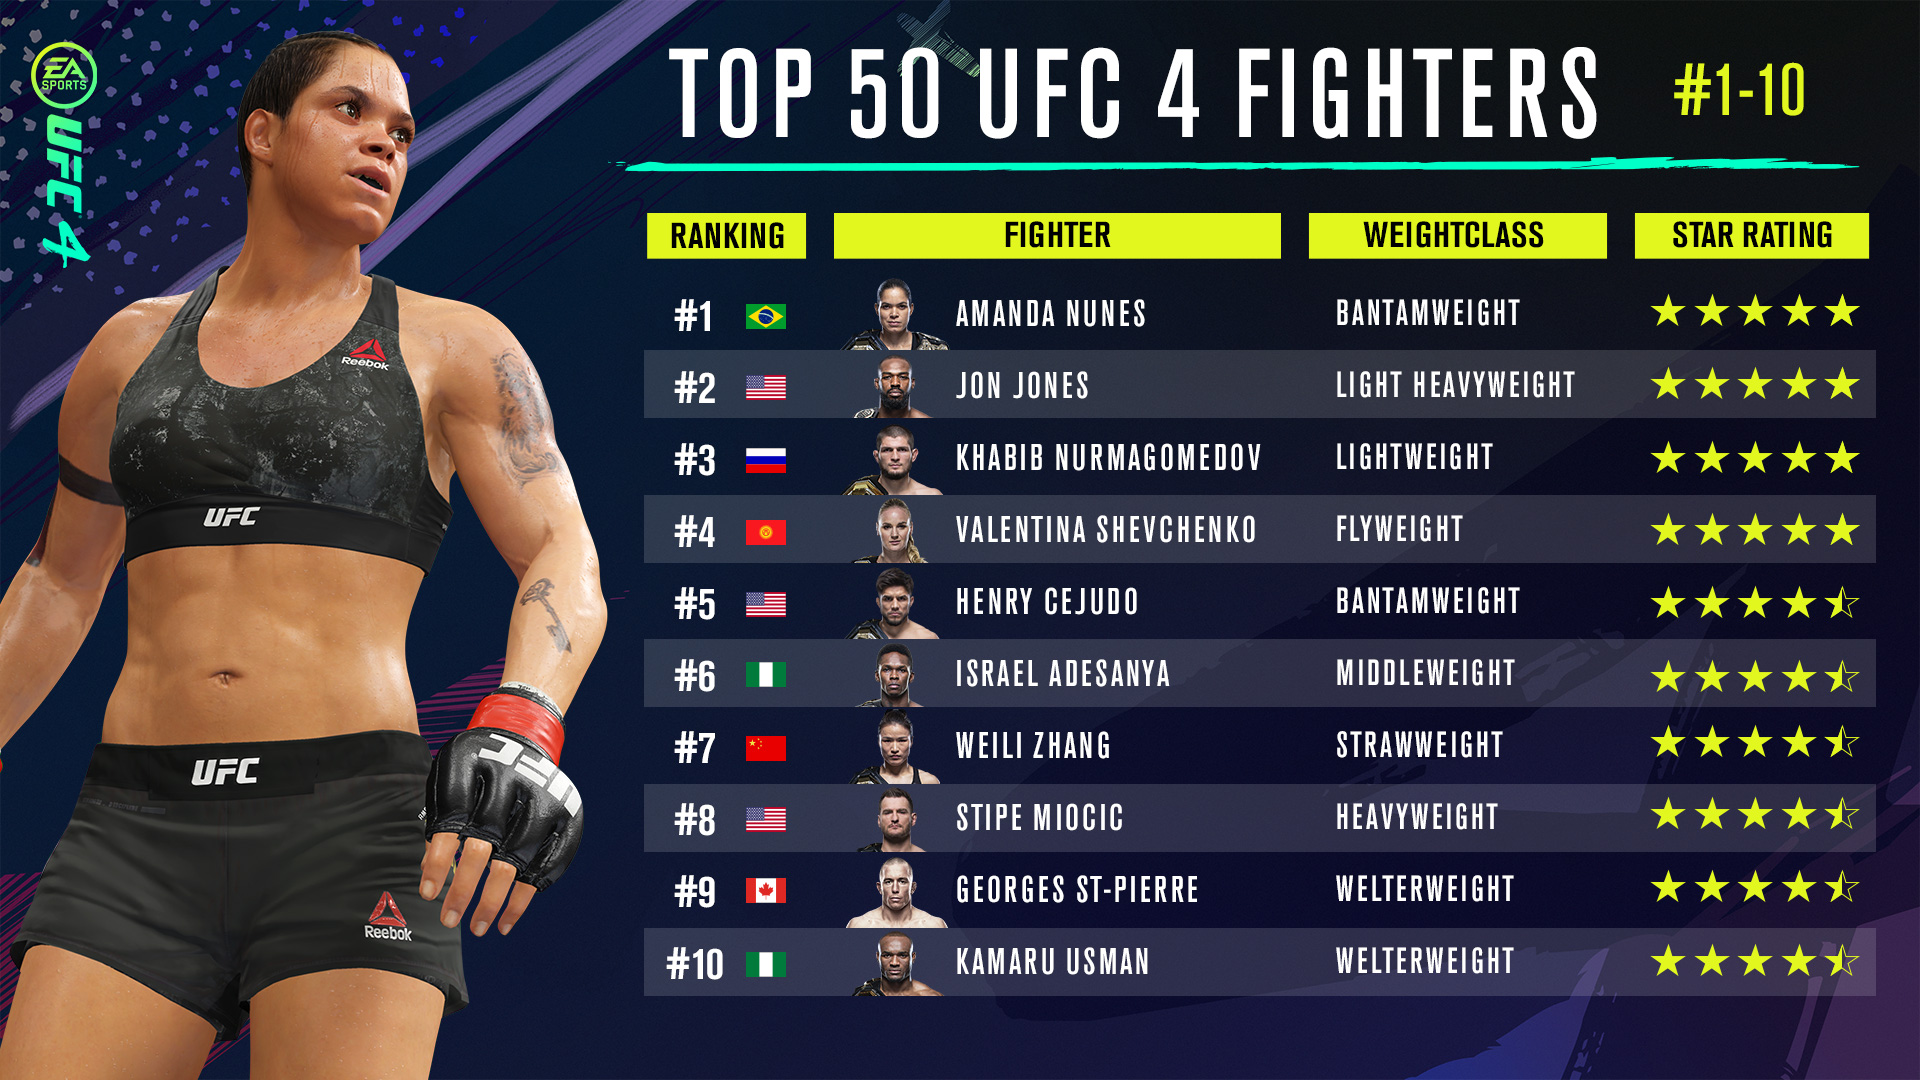 detail budbringer gå på arbejde EA Sports UFC 4 Star Rating System Explained - Top 50 UFC 4 Fighters  Revealed - Operation Sports